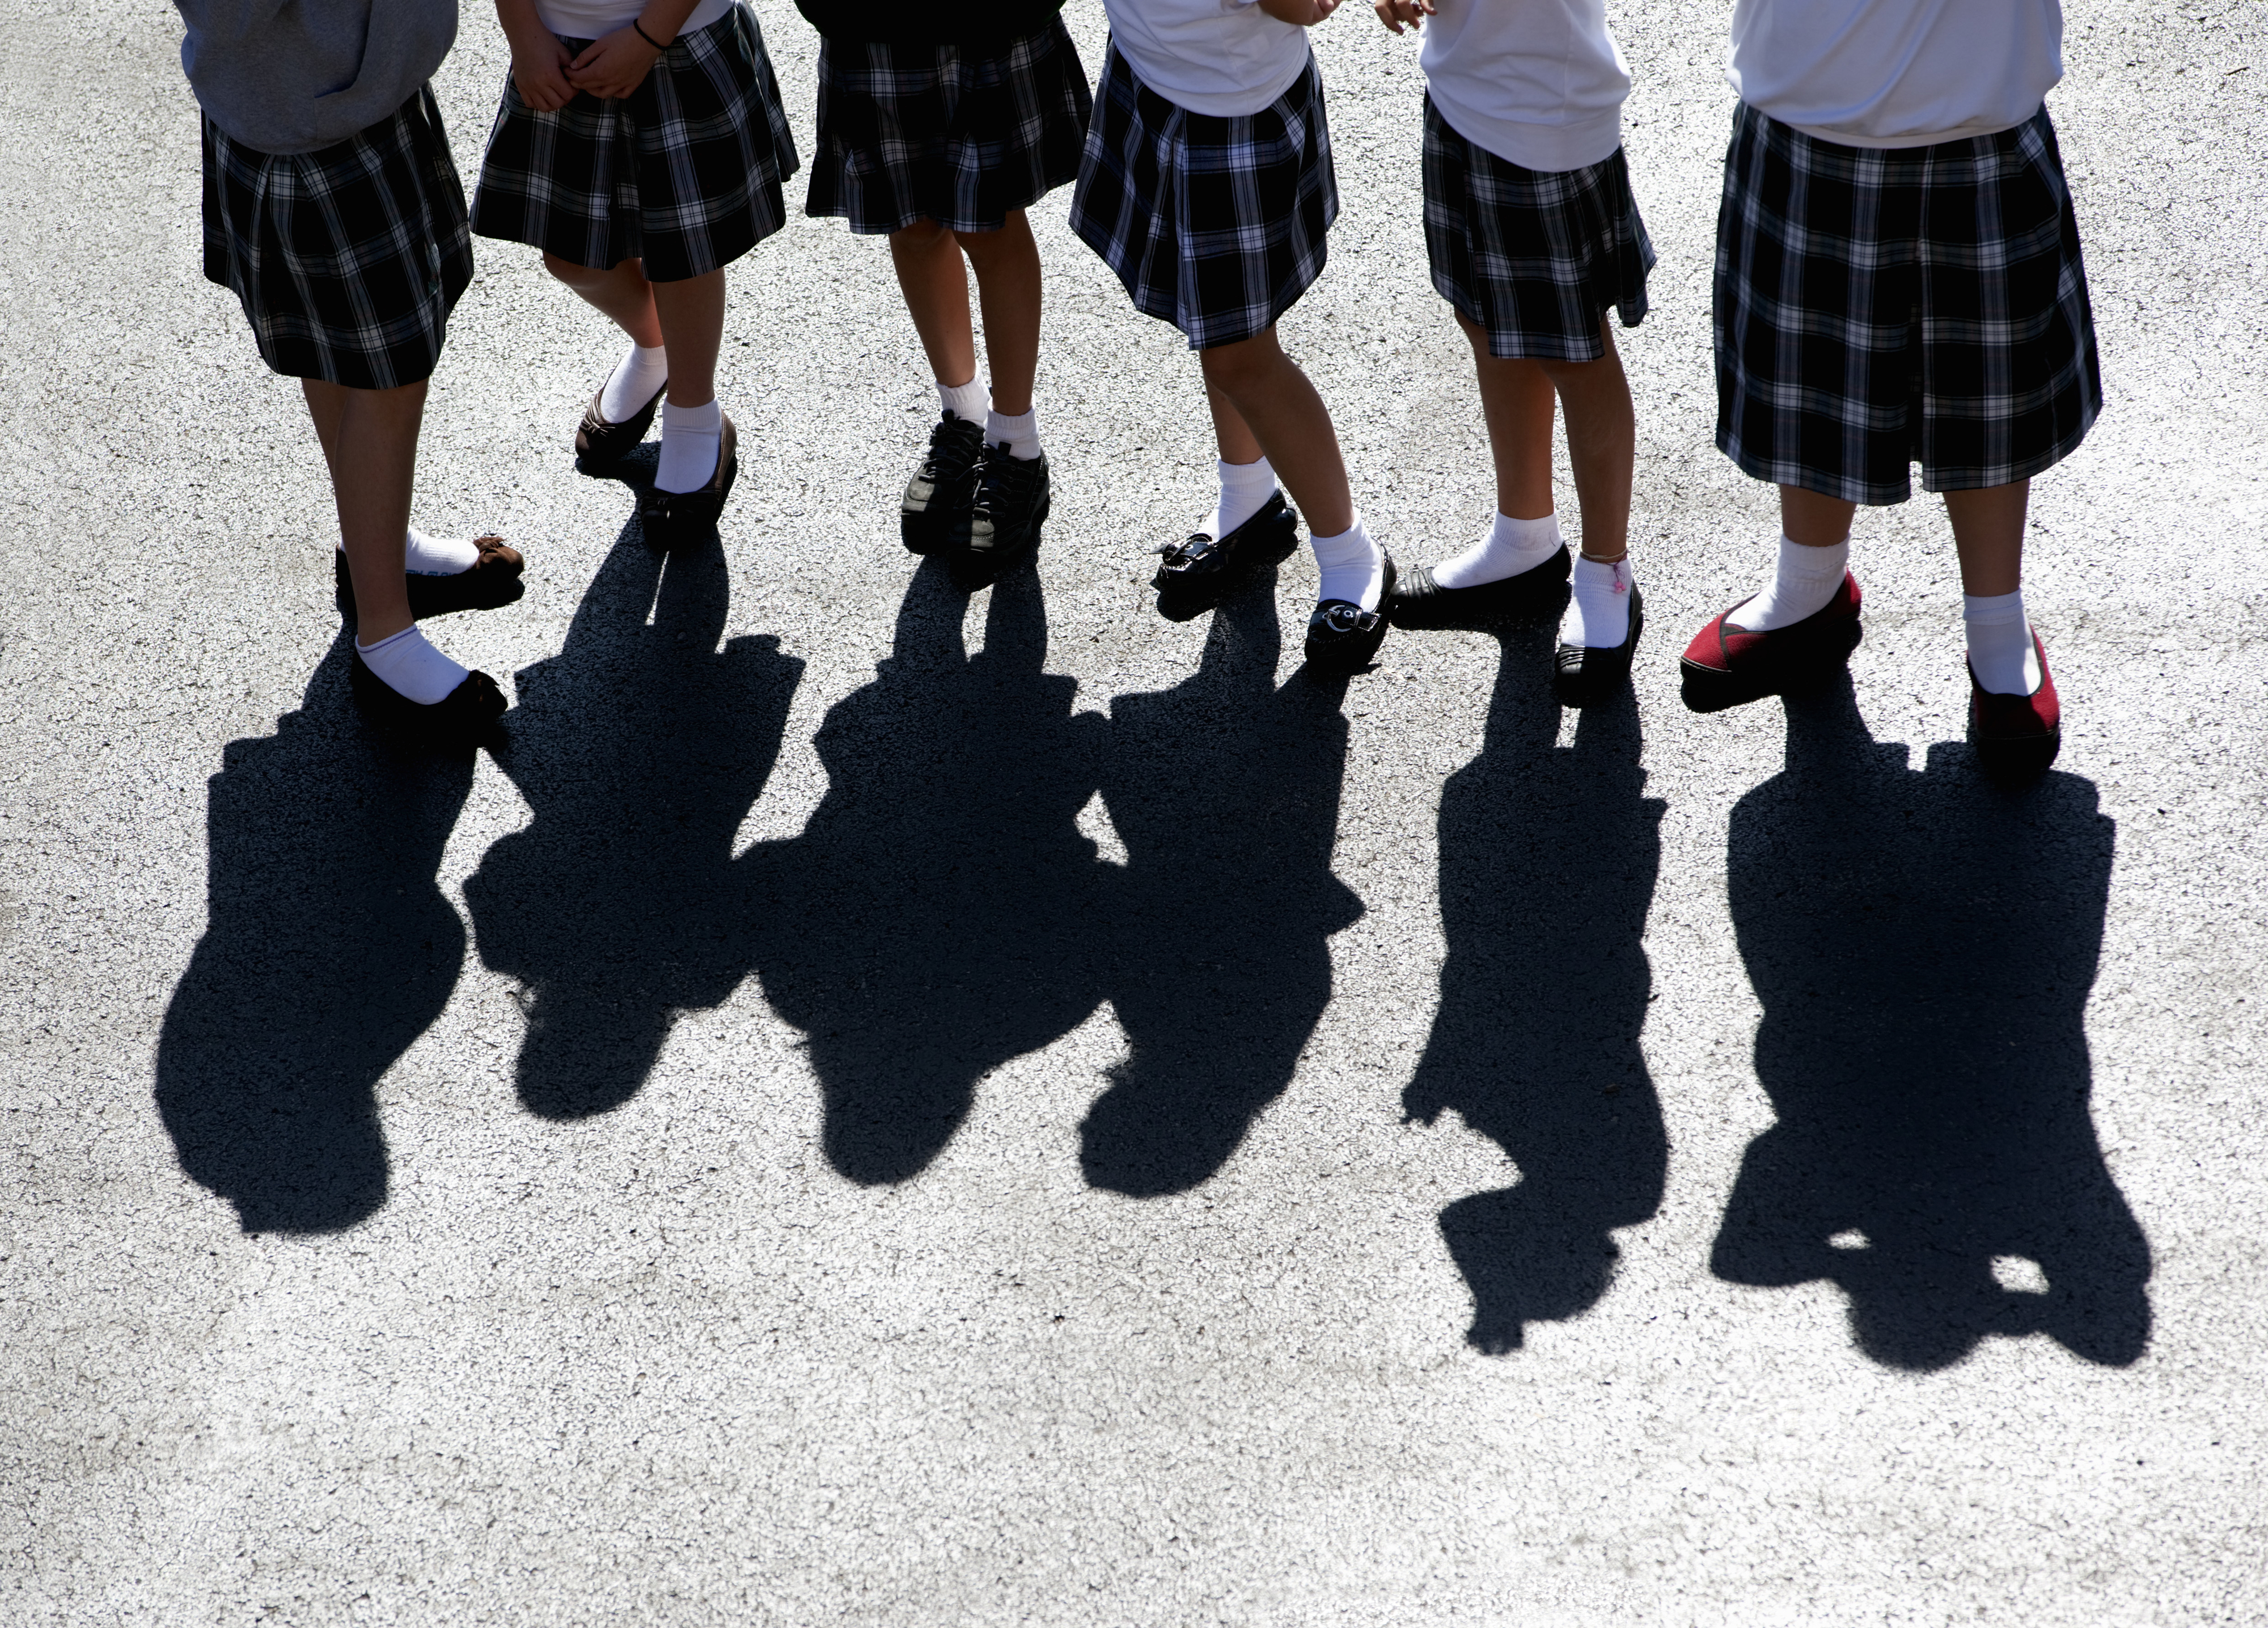 Girls wearing parochial school uniforms